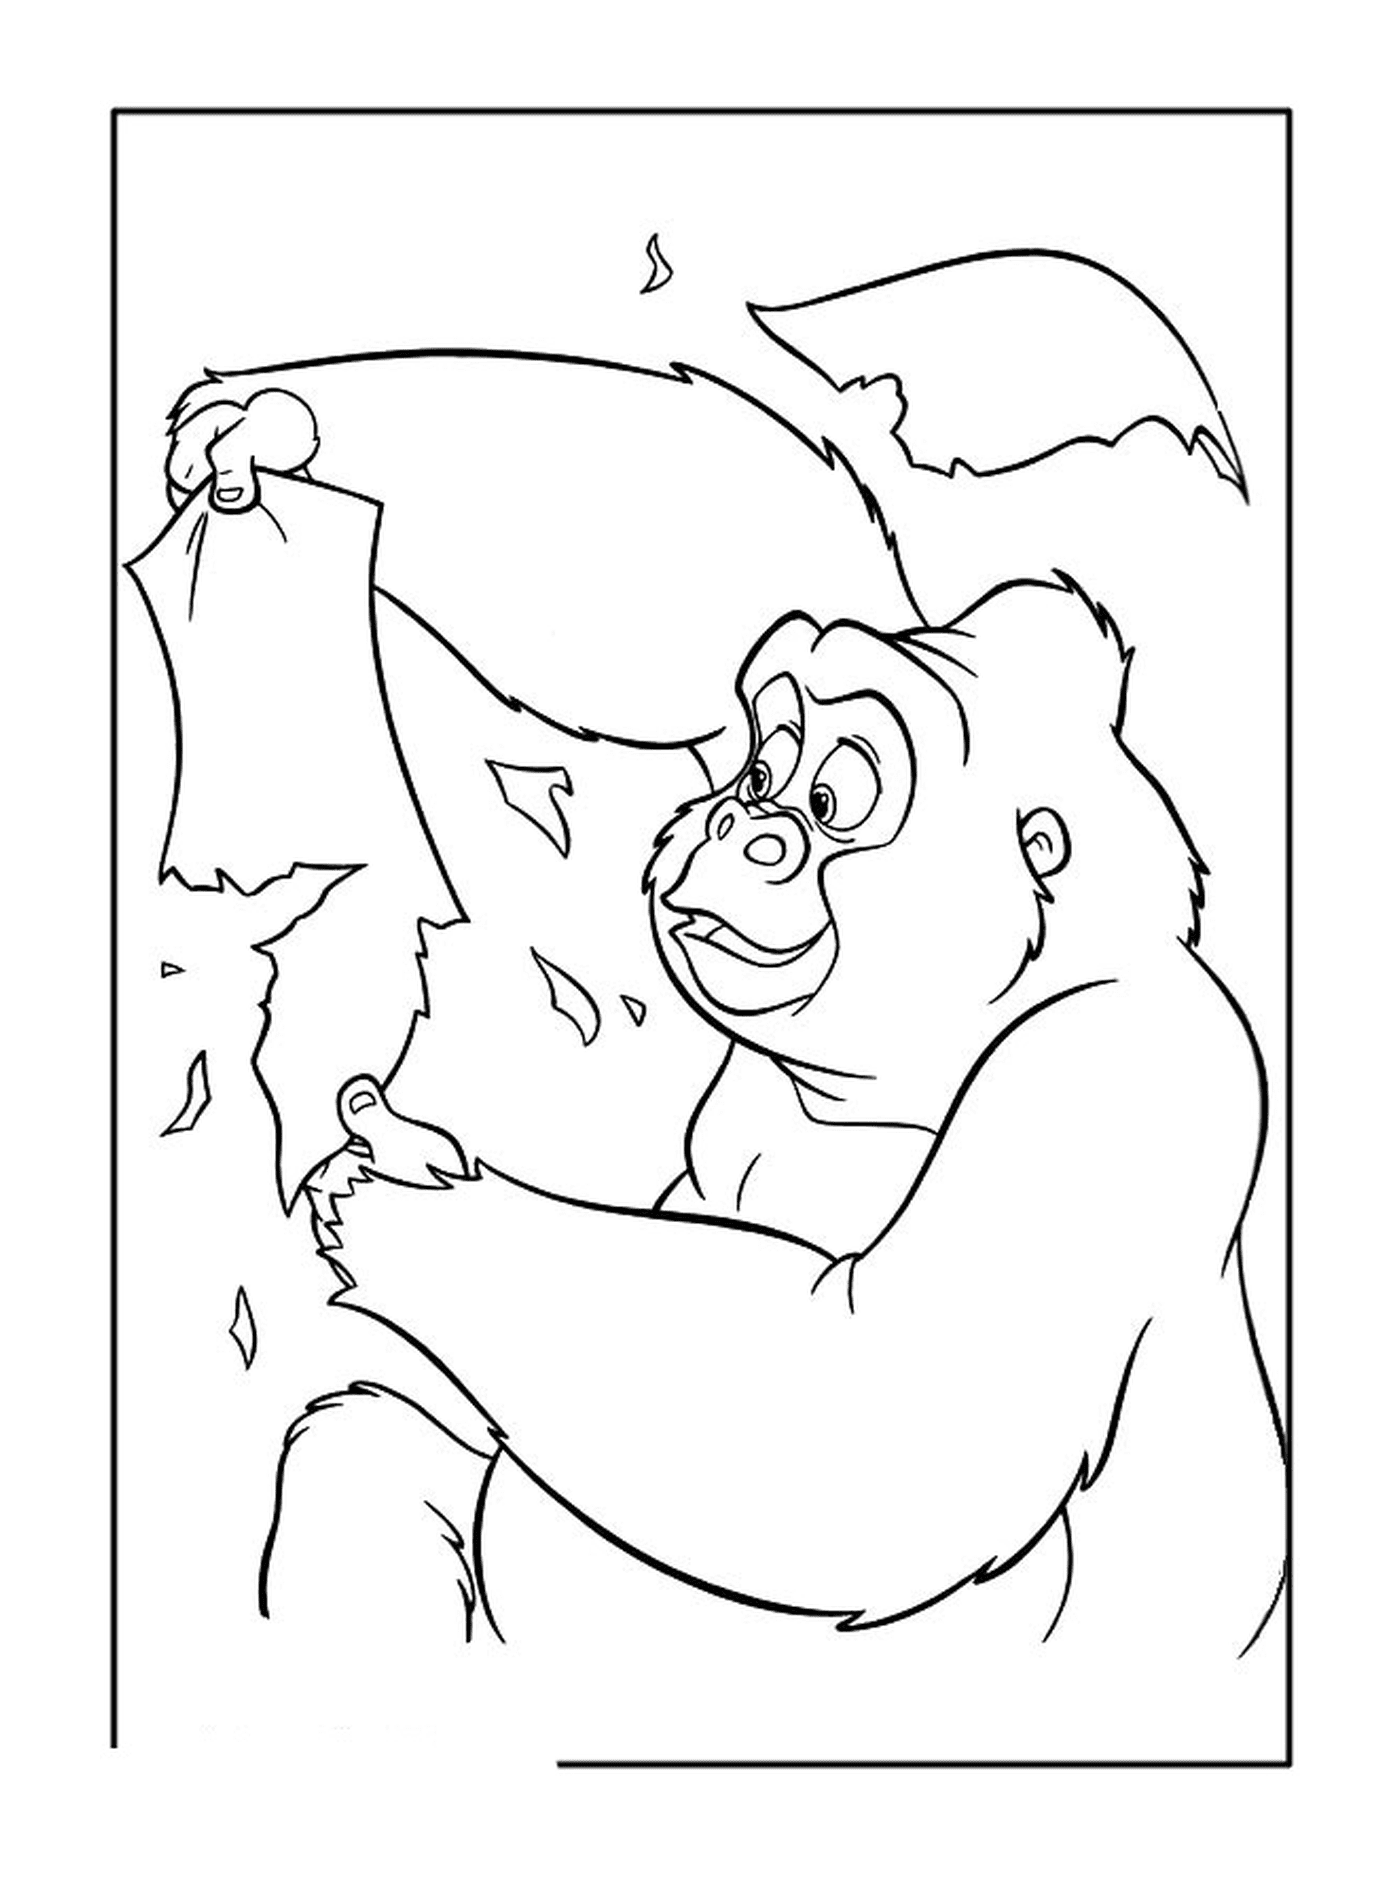  Gorila adulto segurando folhas 